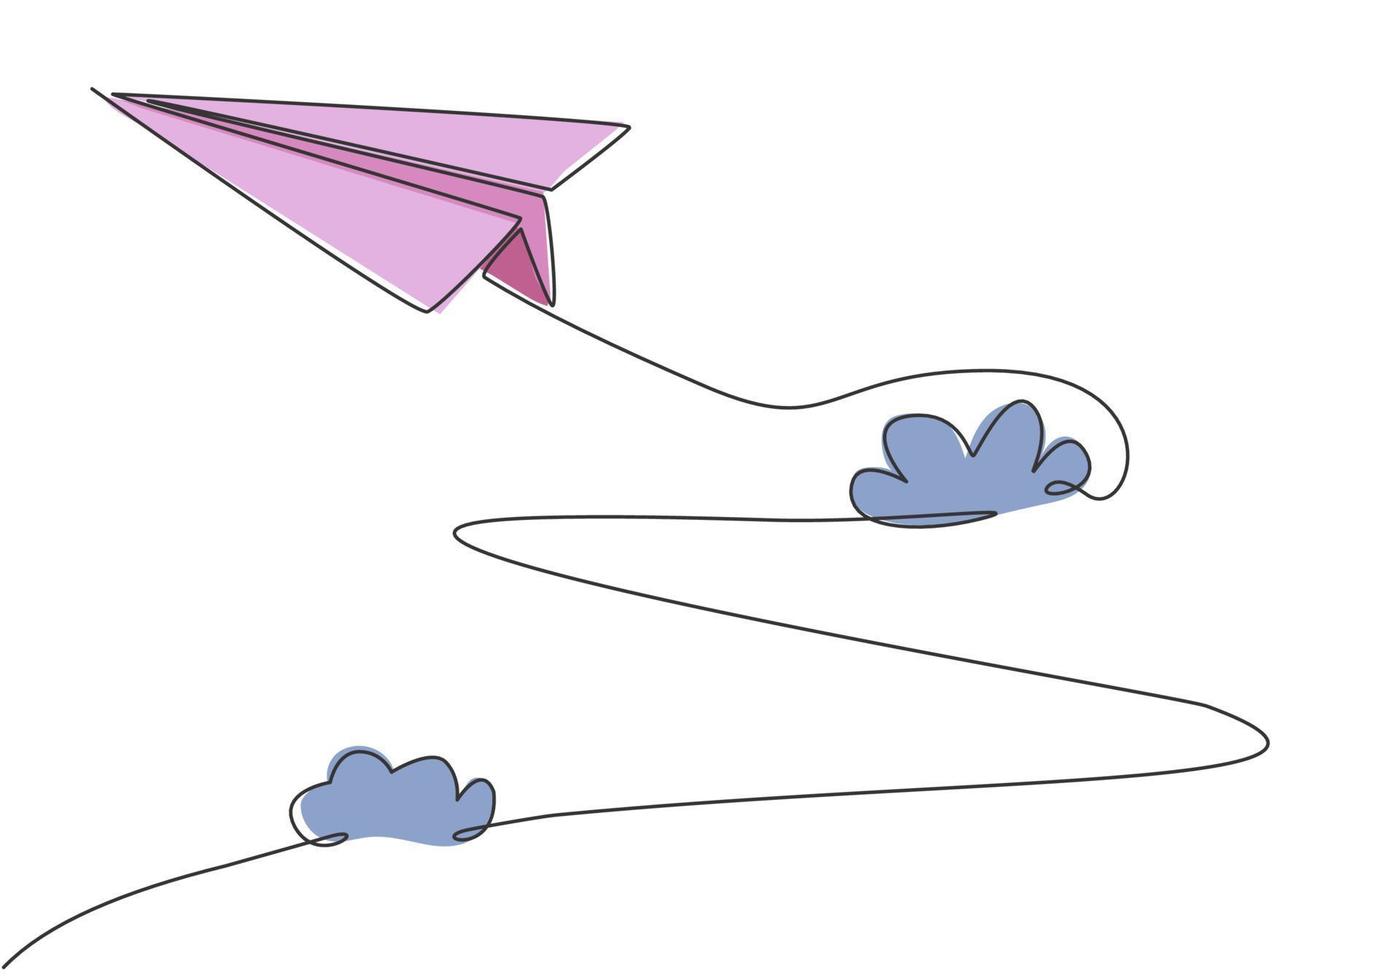 único desenho de linha contínua de avião de papel voando alto através das nuvens em fundo branco. brinquedo de crianças de origami de papel. conceito minimalismo dinâmico uma linha desenhar ilustração vetorial de design gráfico vetor